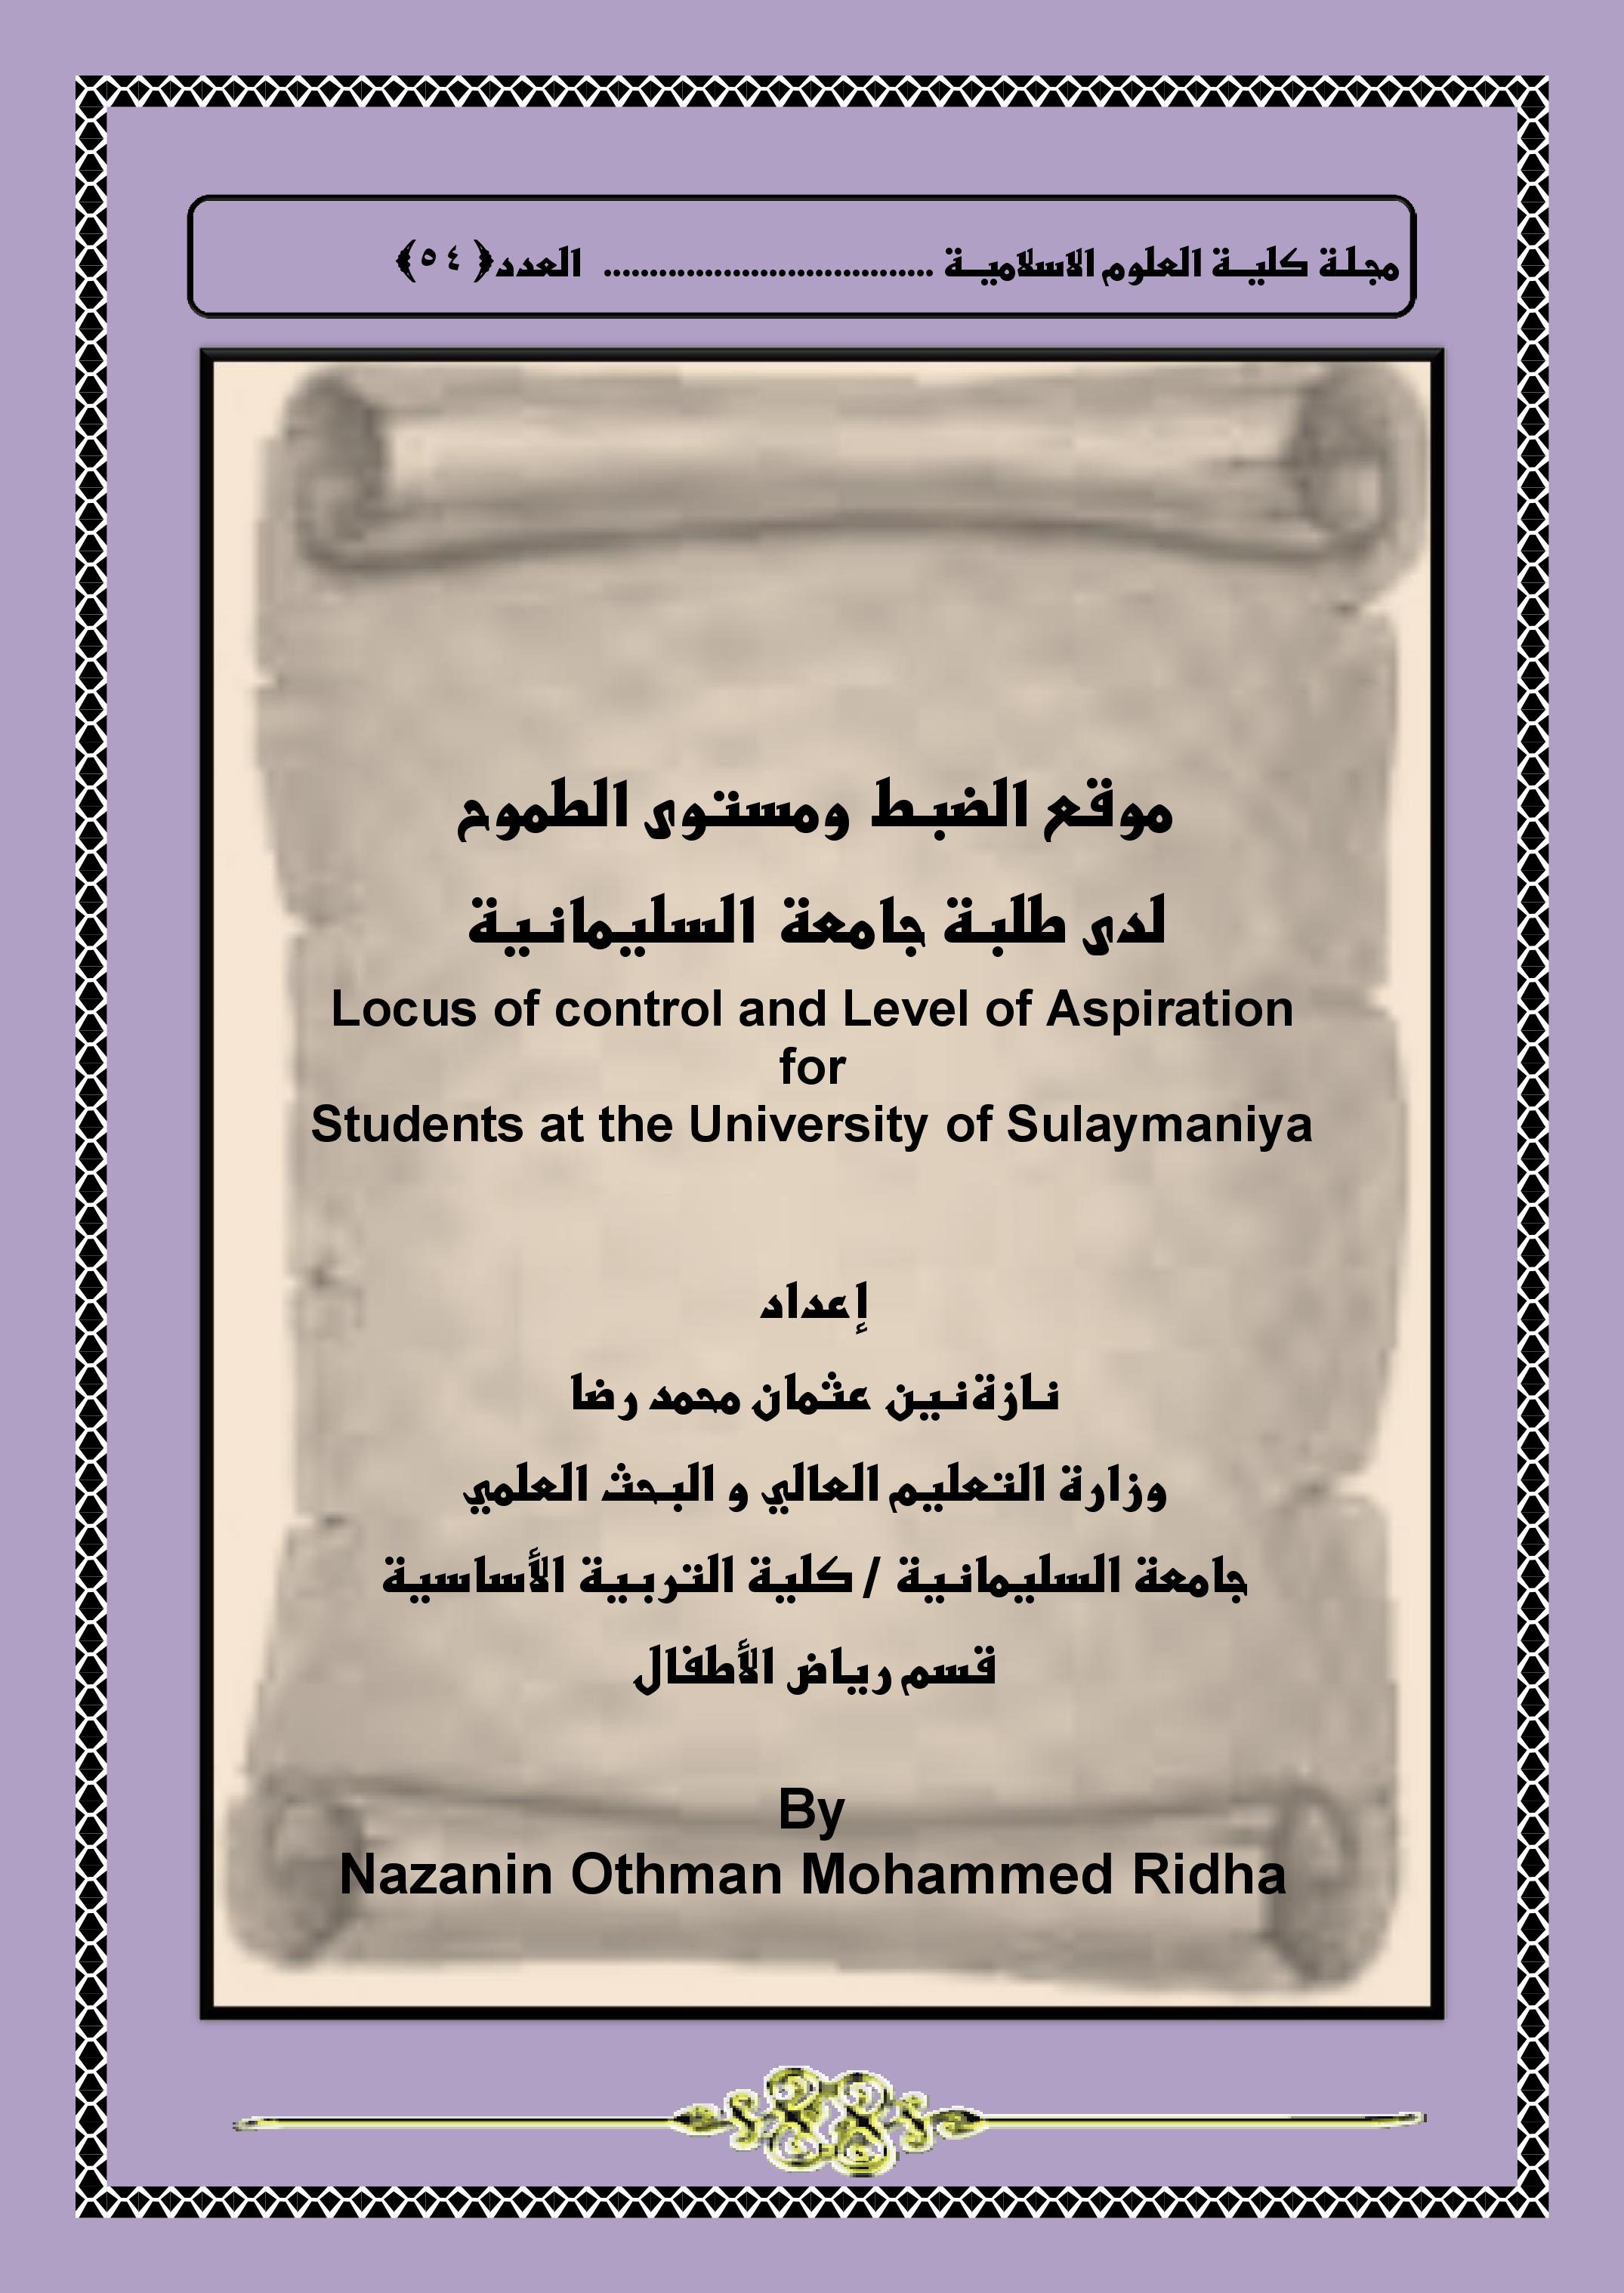 موقع الضبط  ومستوى الطموح لدى طلبة جامعة السليمانية